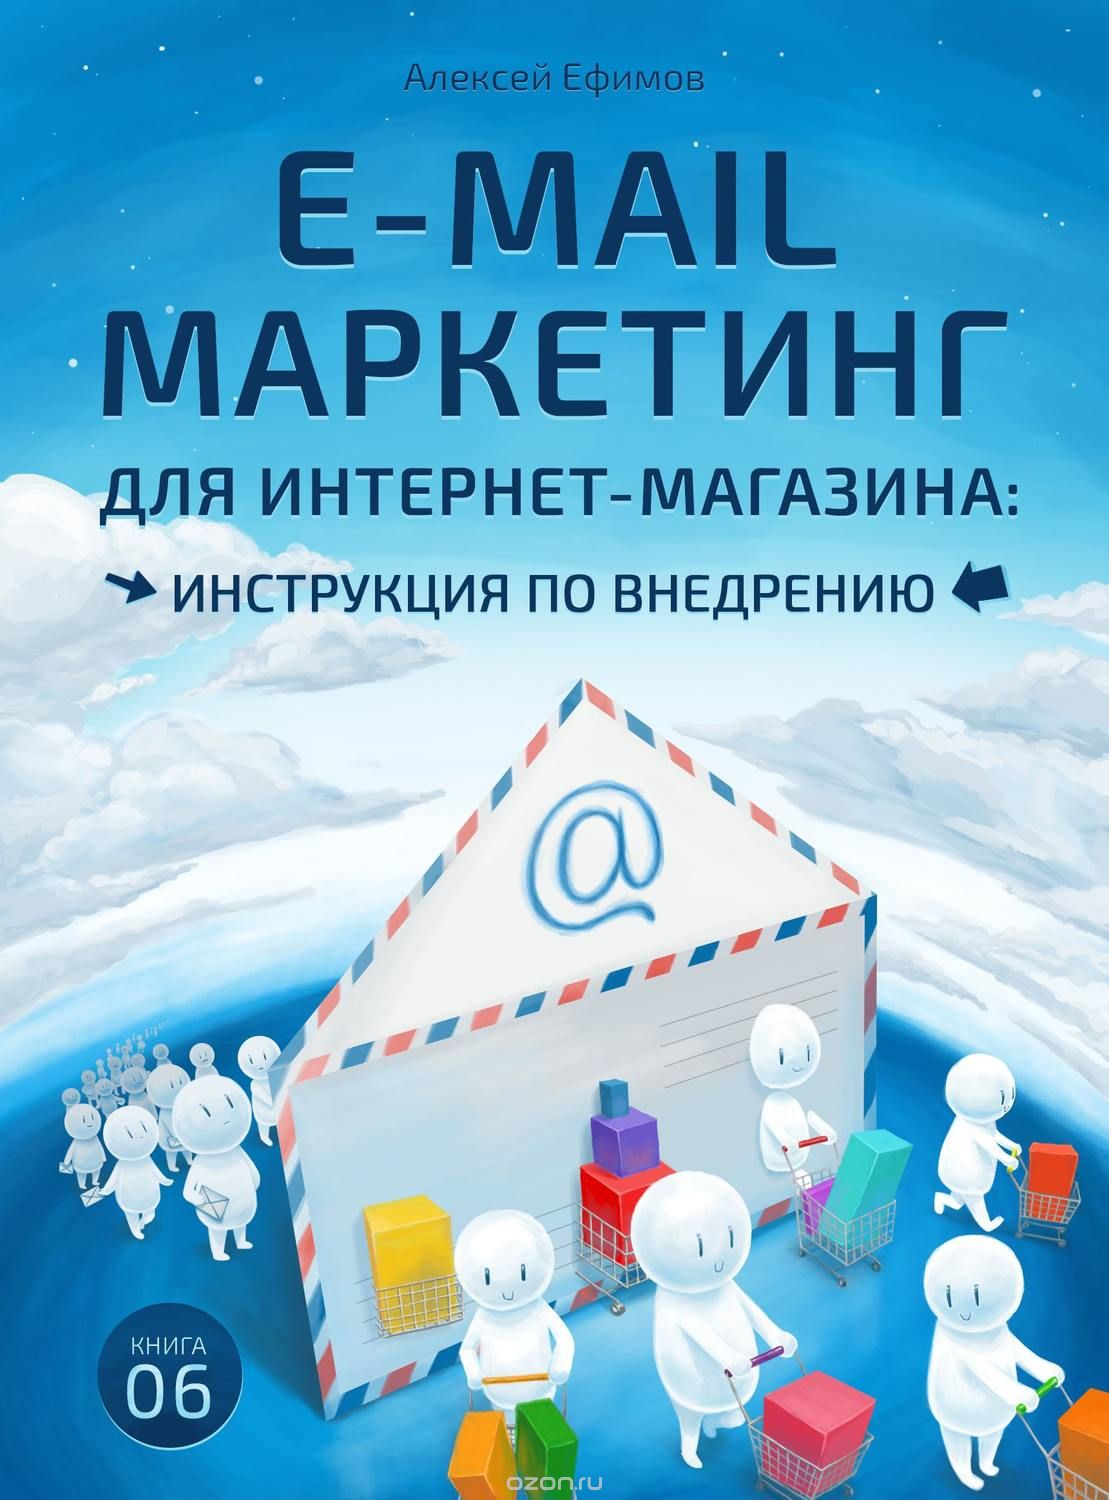 Алексей Ефимов «E-mail маркетинг для интернет-магазина: инструкция по внедрению»